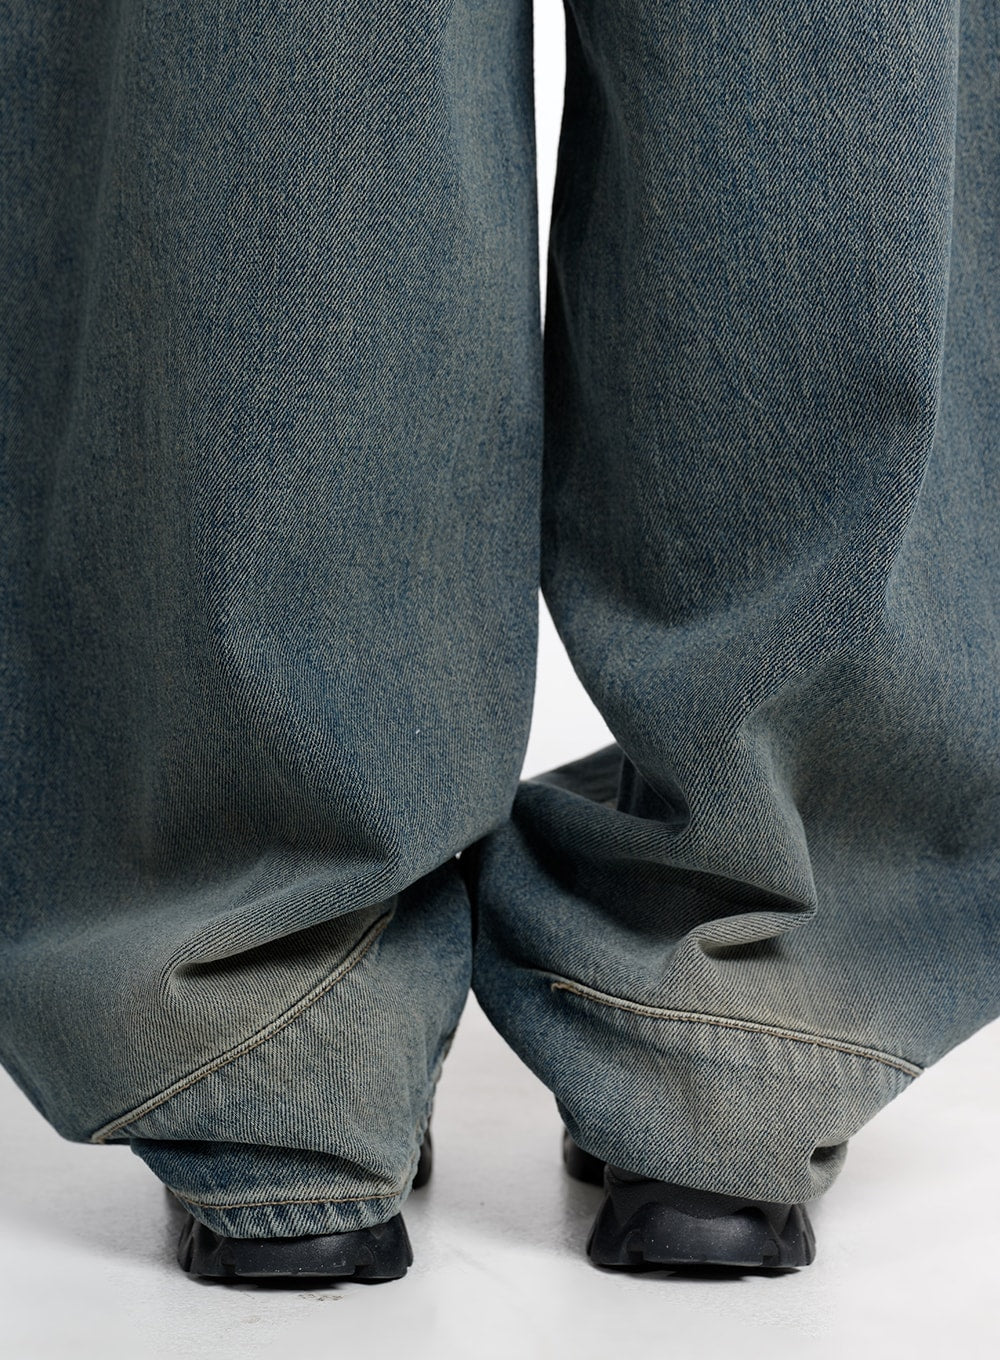 vintage-low-rise-baggy-jeans-cm415